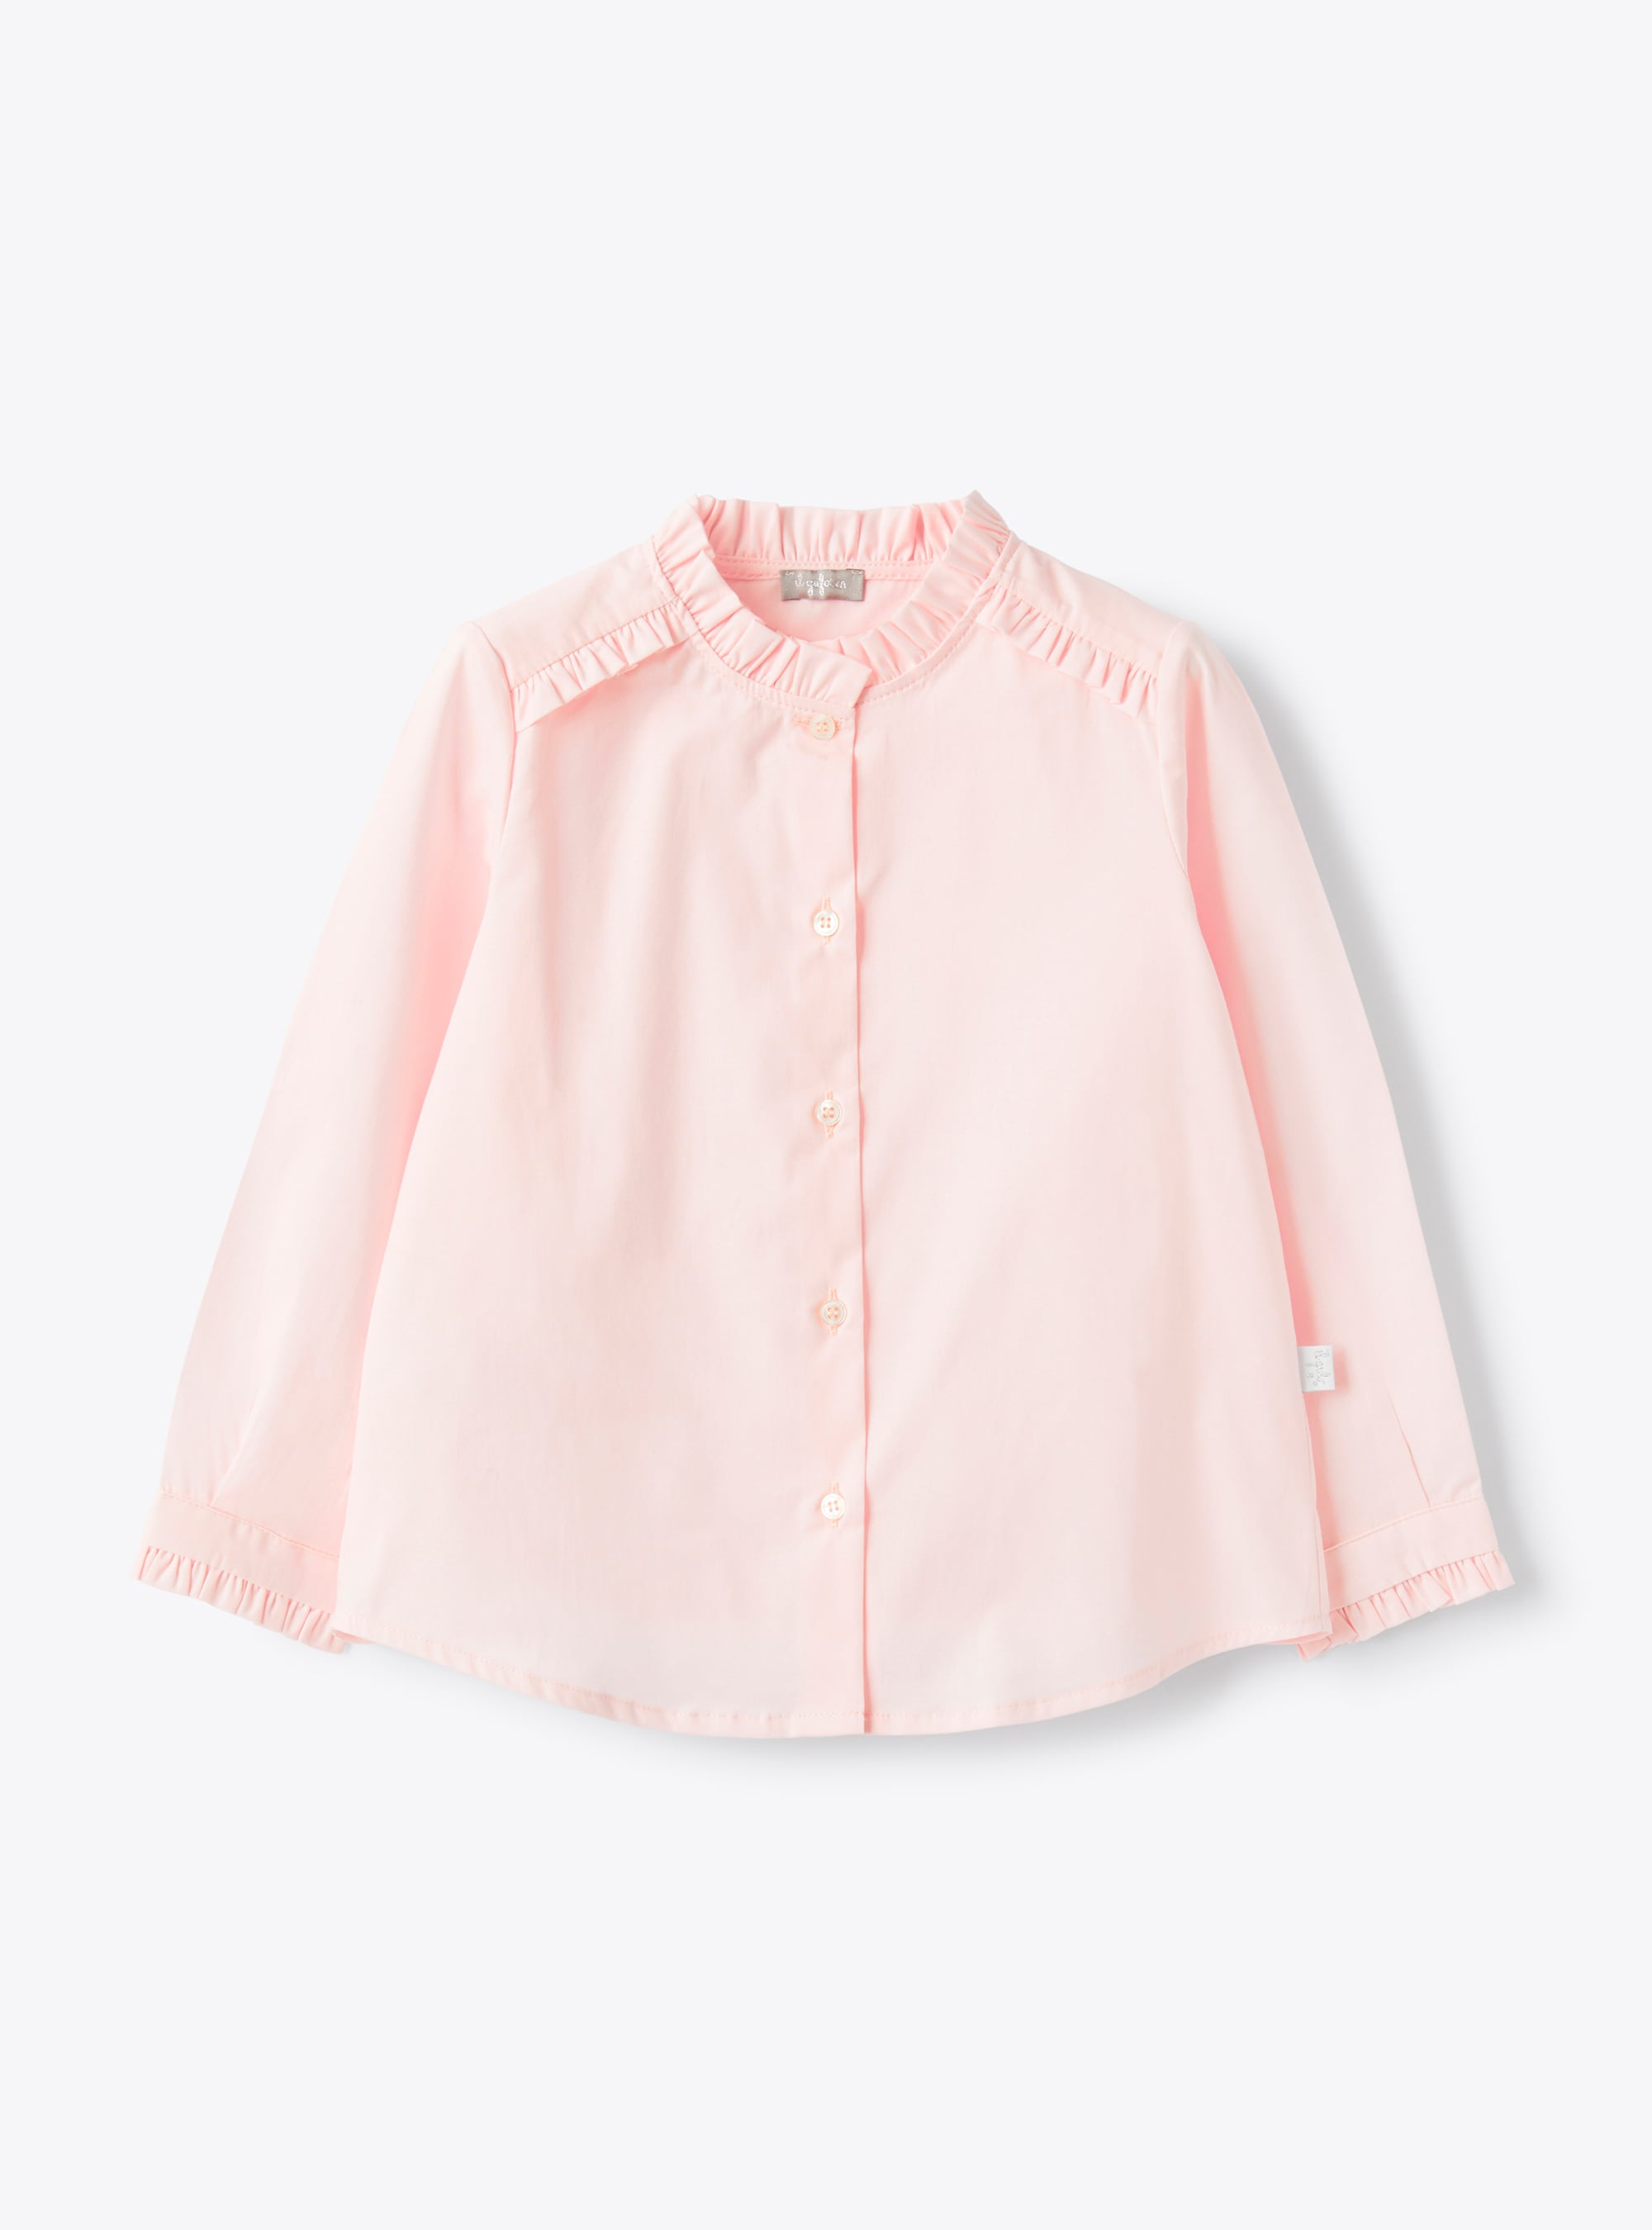 Bluse aus rosa Stretch-Popeline - Hemden - Il Gufo